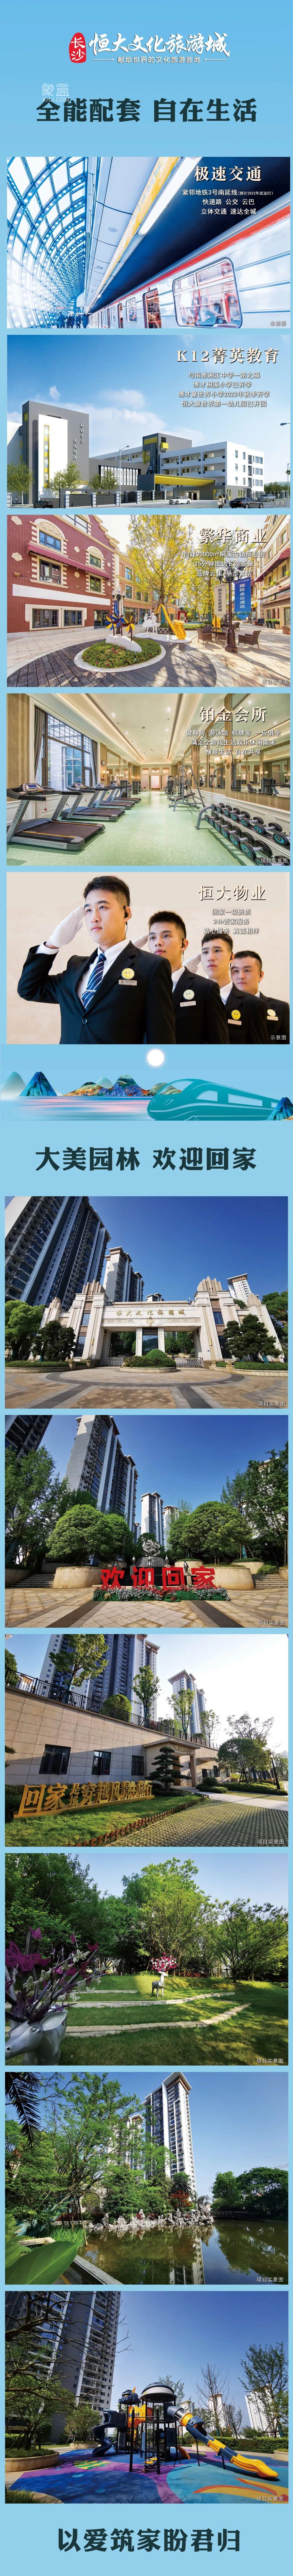 7月15日长沙恒大文化旅游城20栋交房盛启